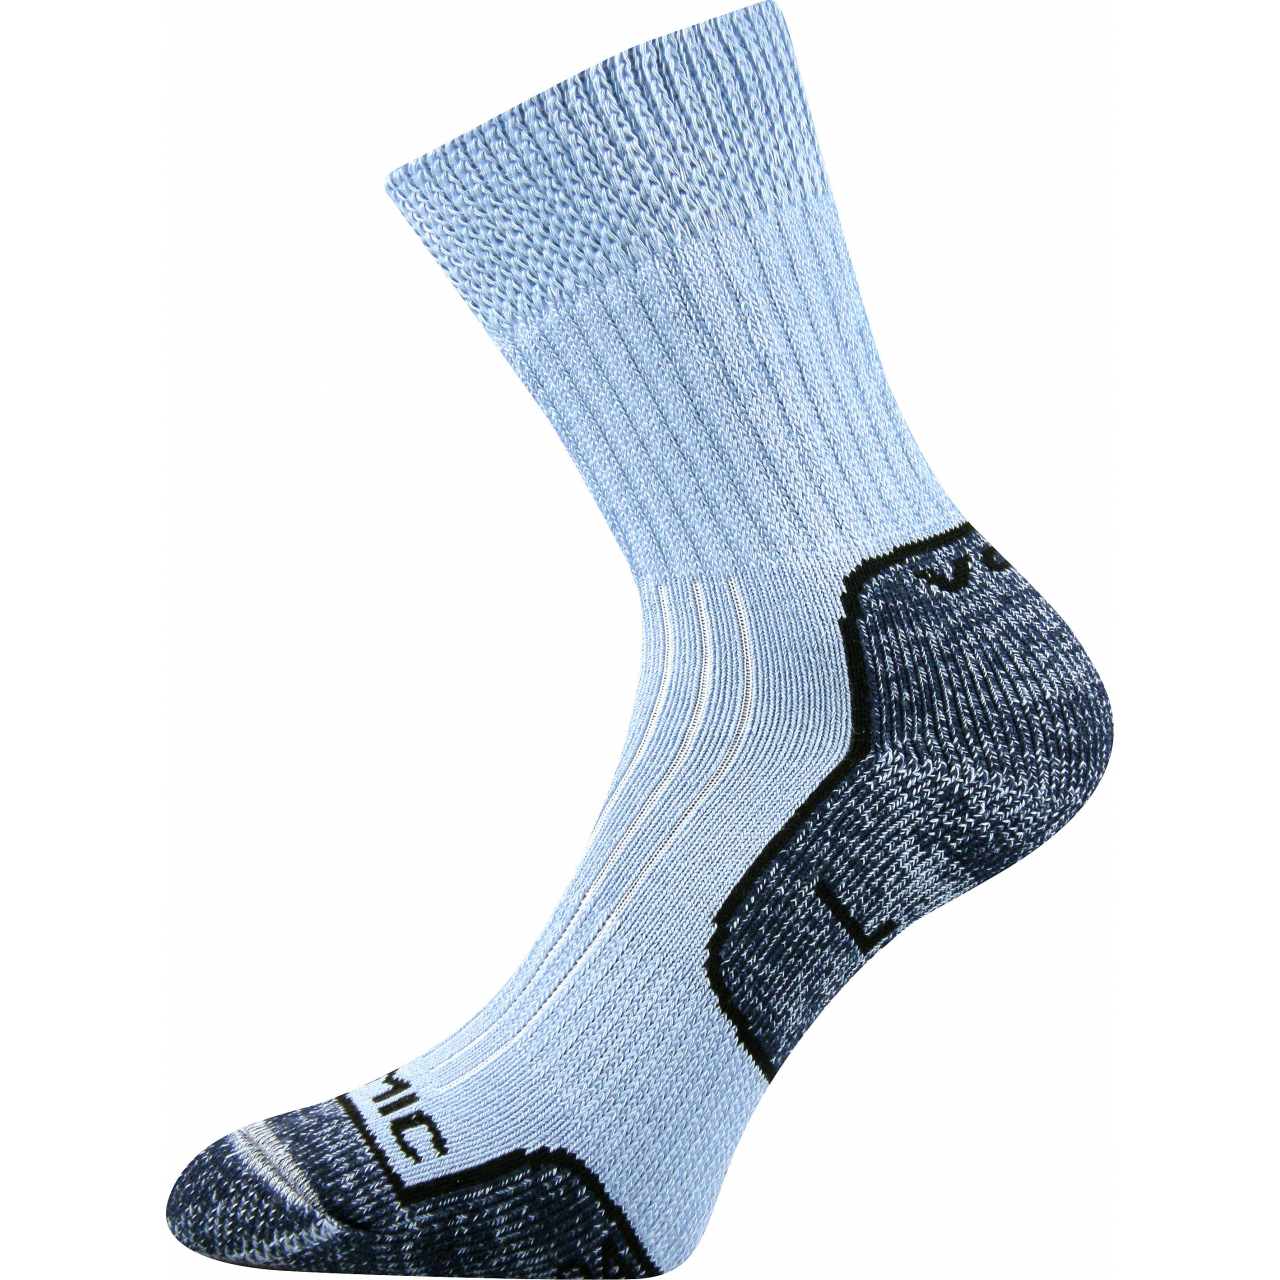 Ponožky unisex termo Voxx Zenith L + P - světle modré, 35-37